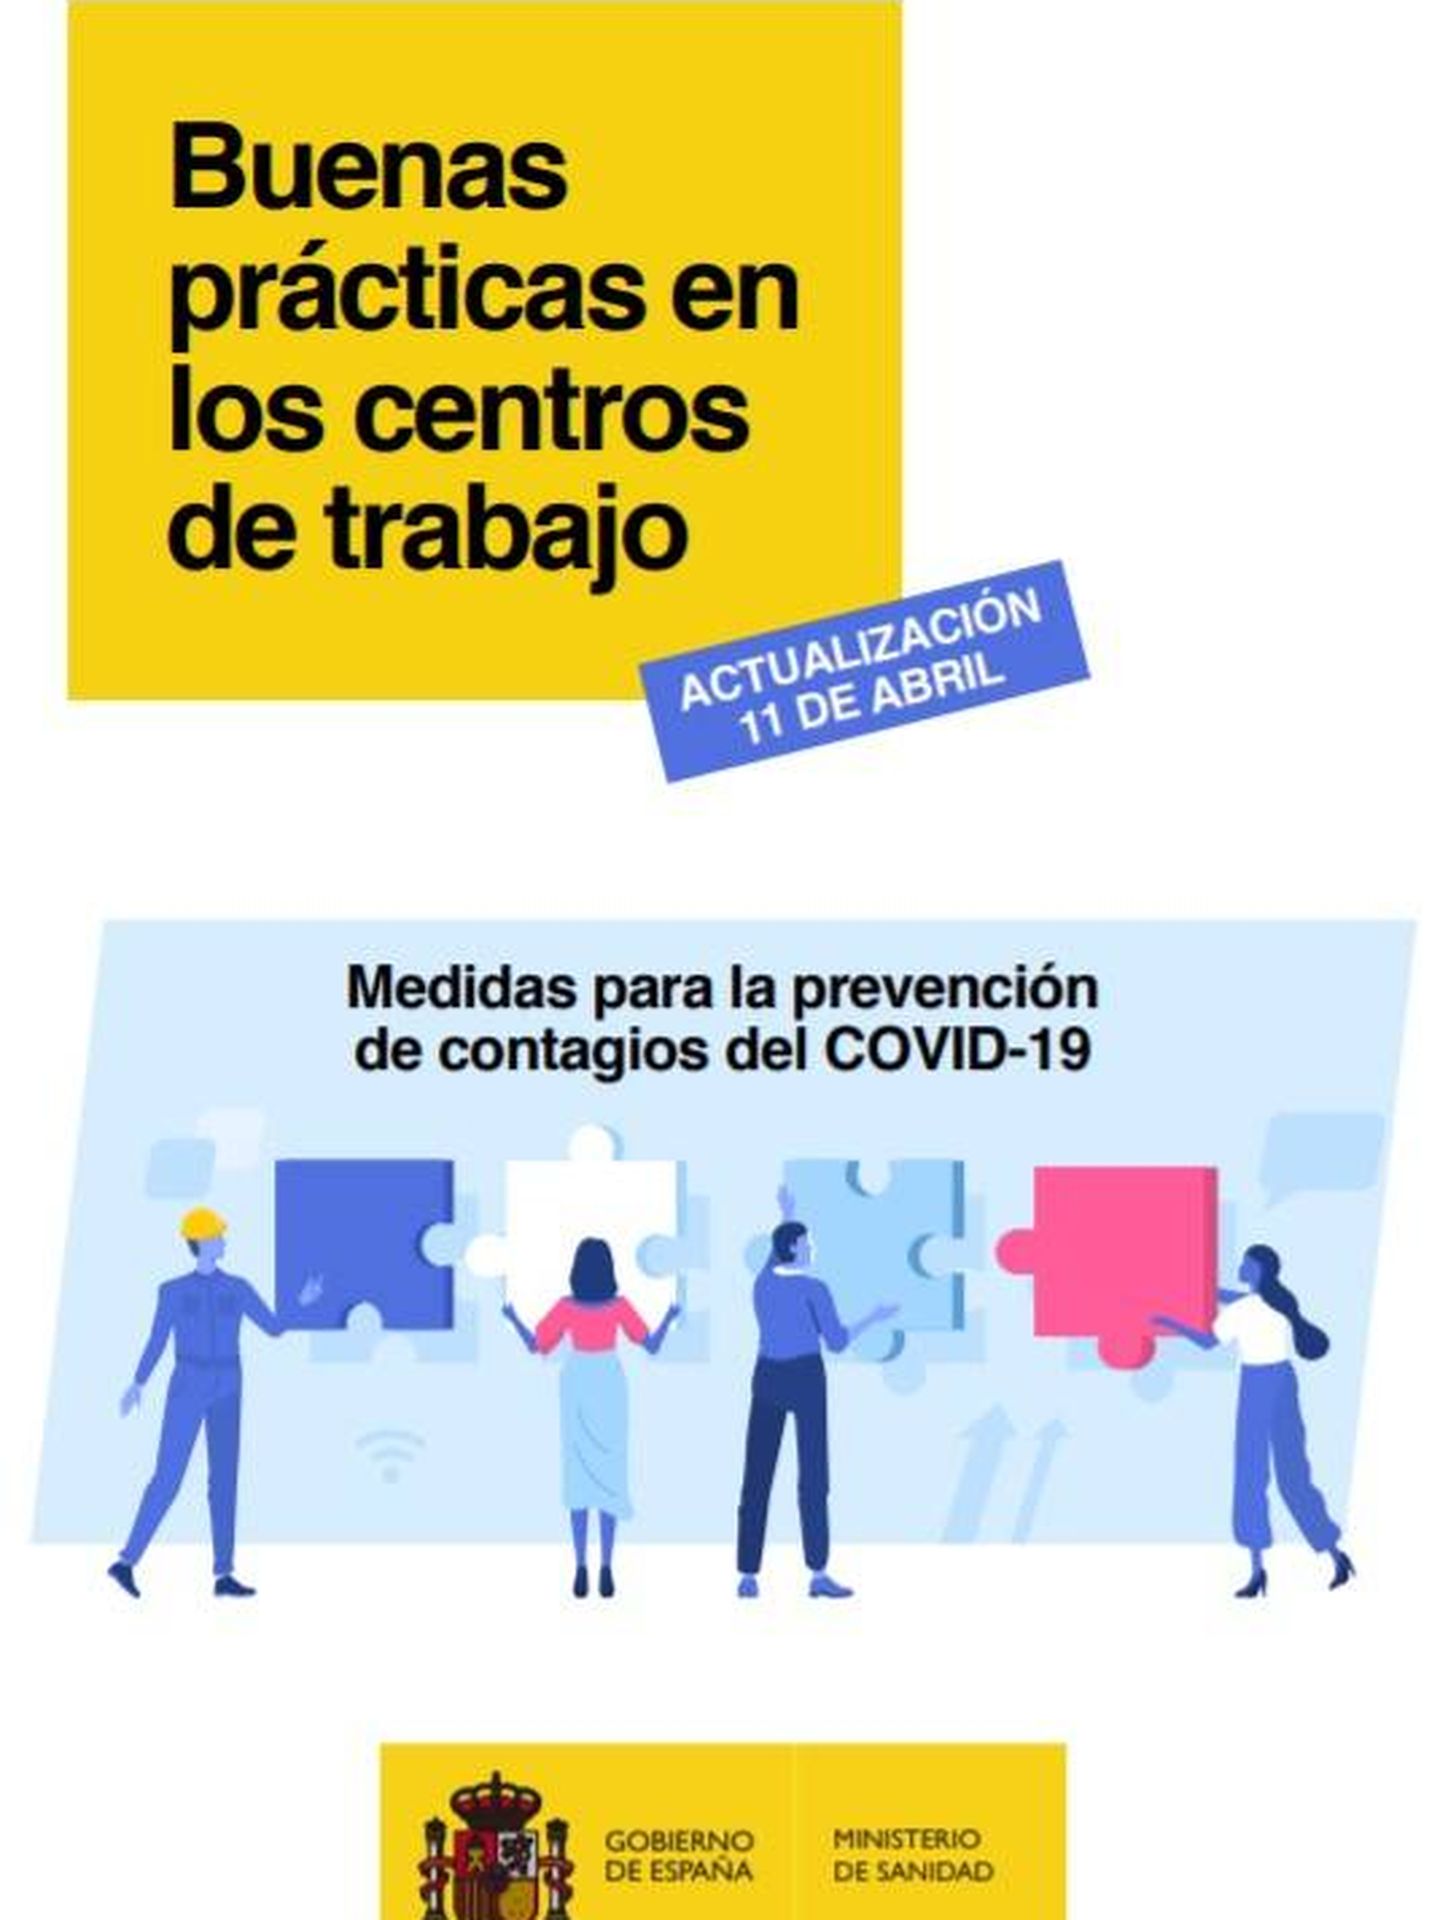 Consulte aquí en PDF la guía de buenas prácticas en los centros de trabajo editada por el Ministerio de Sanidad. 